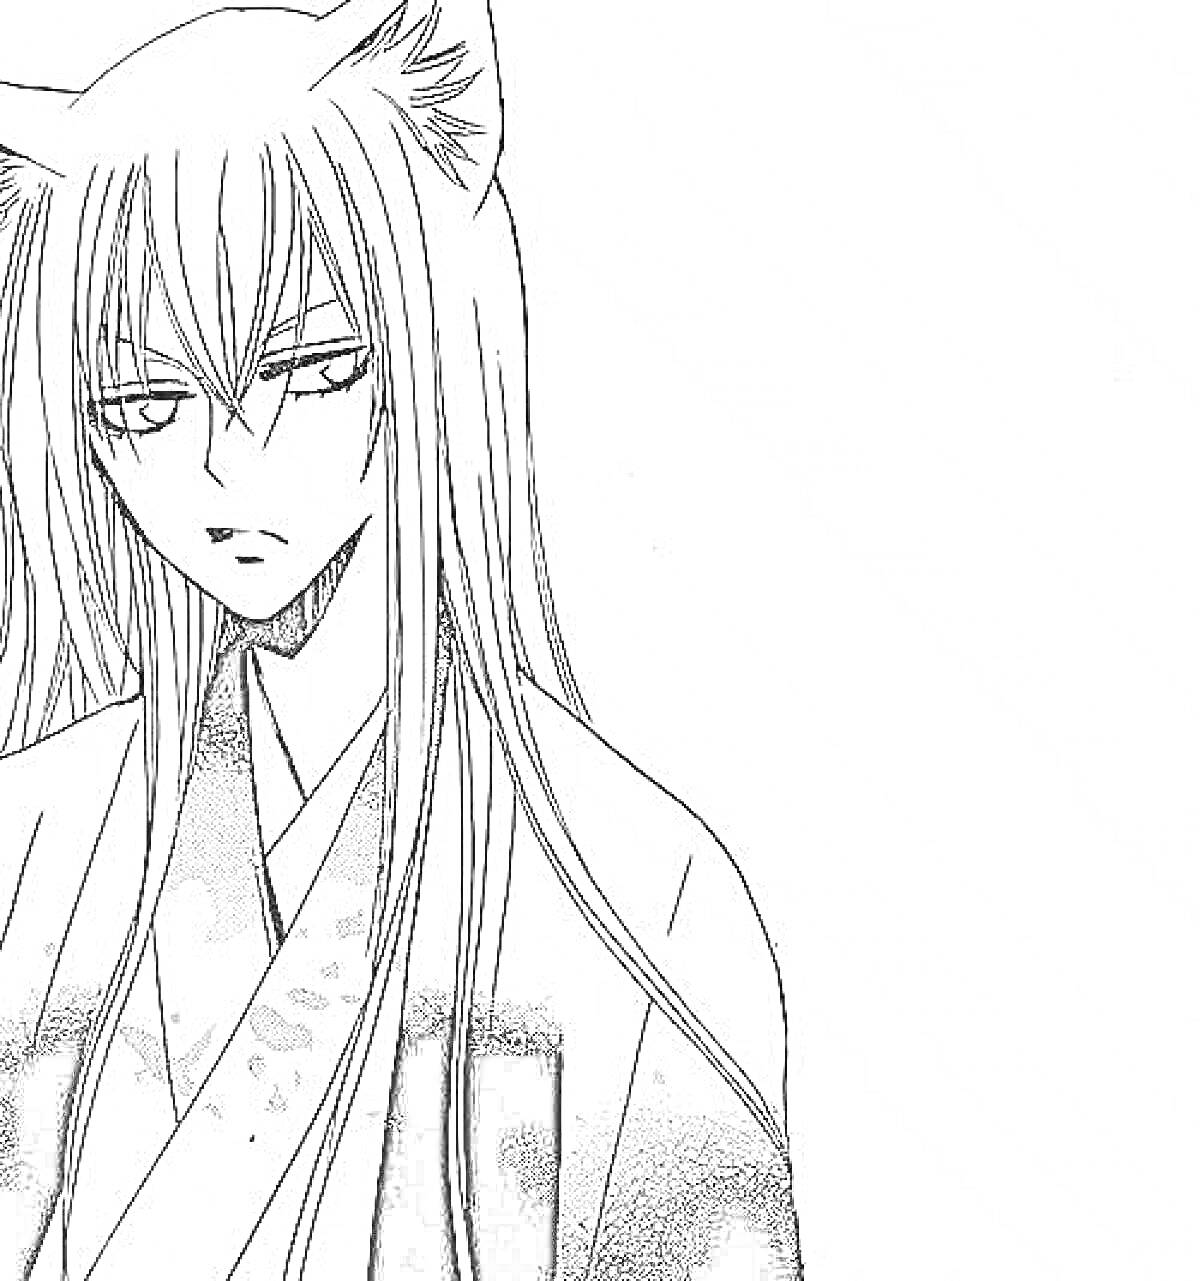 Раскраска Раскраска с изображением парня с длинными волосами и кошачьими ушами в традиционной японской одежде